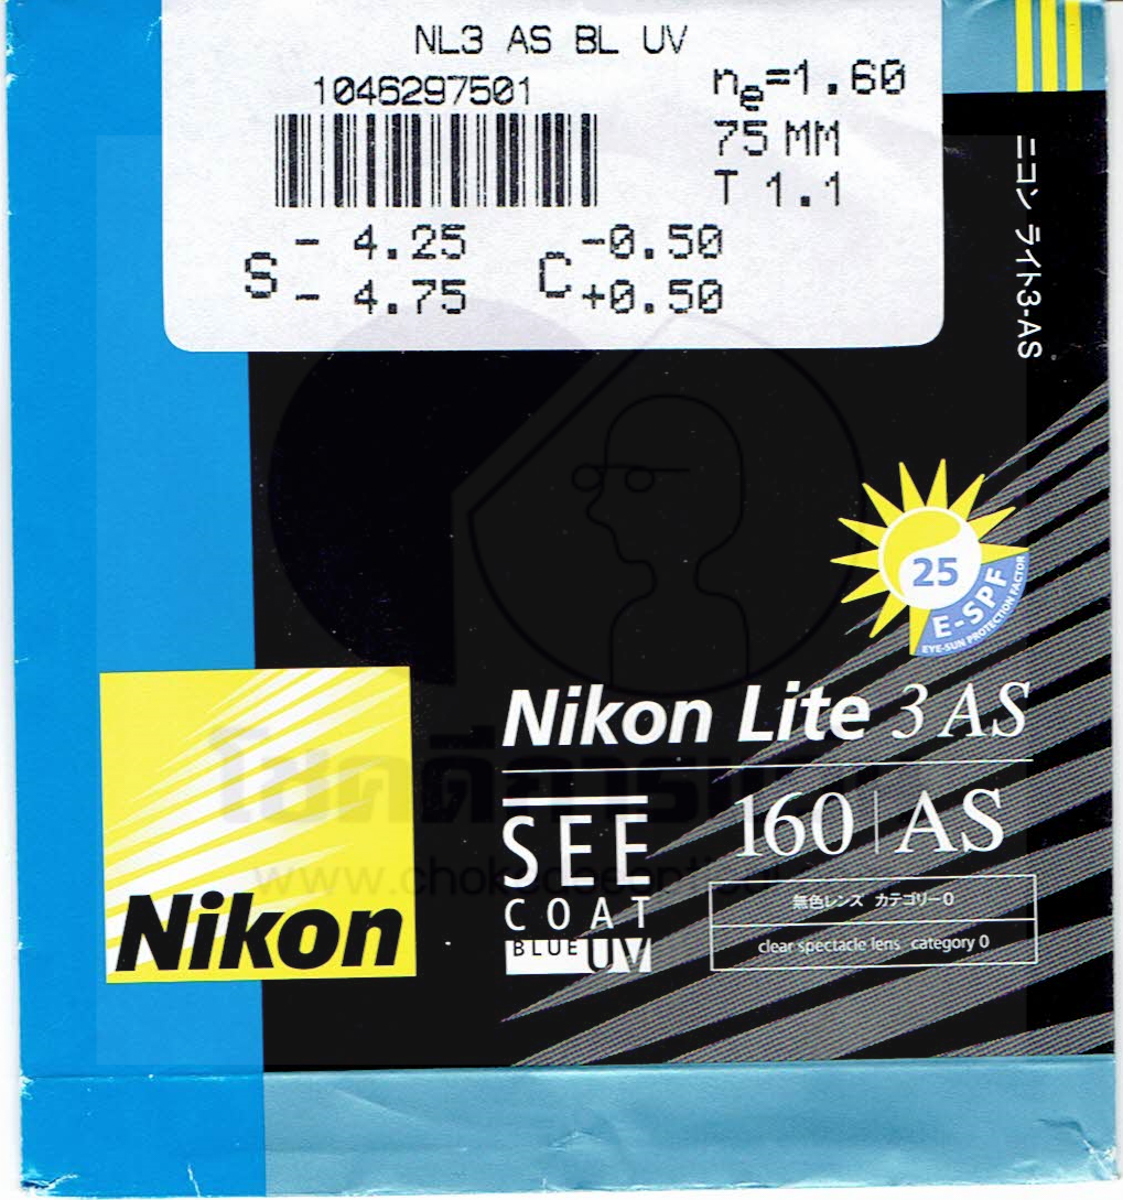 เลนส์ตัดแสงสีน้ำเงิน ของ Nikon